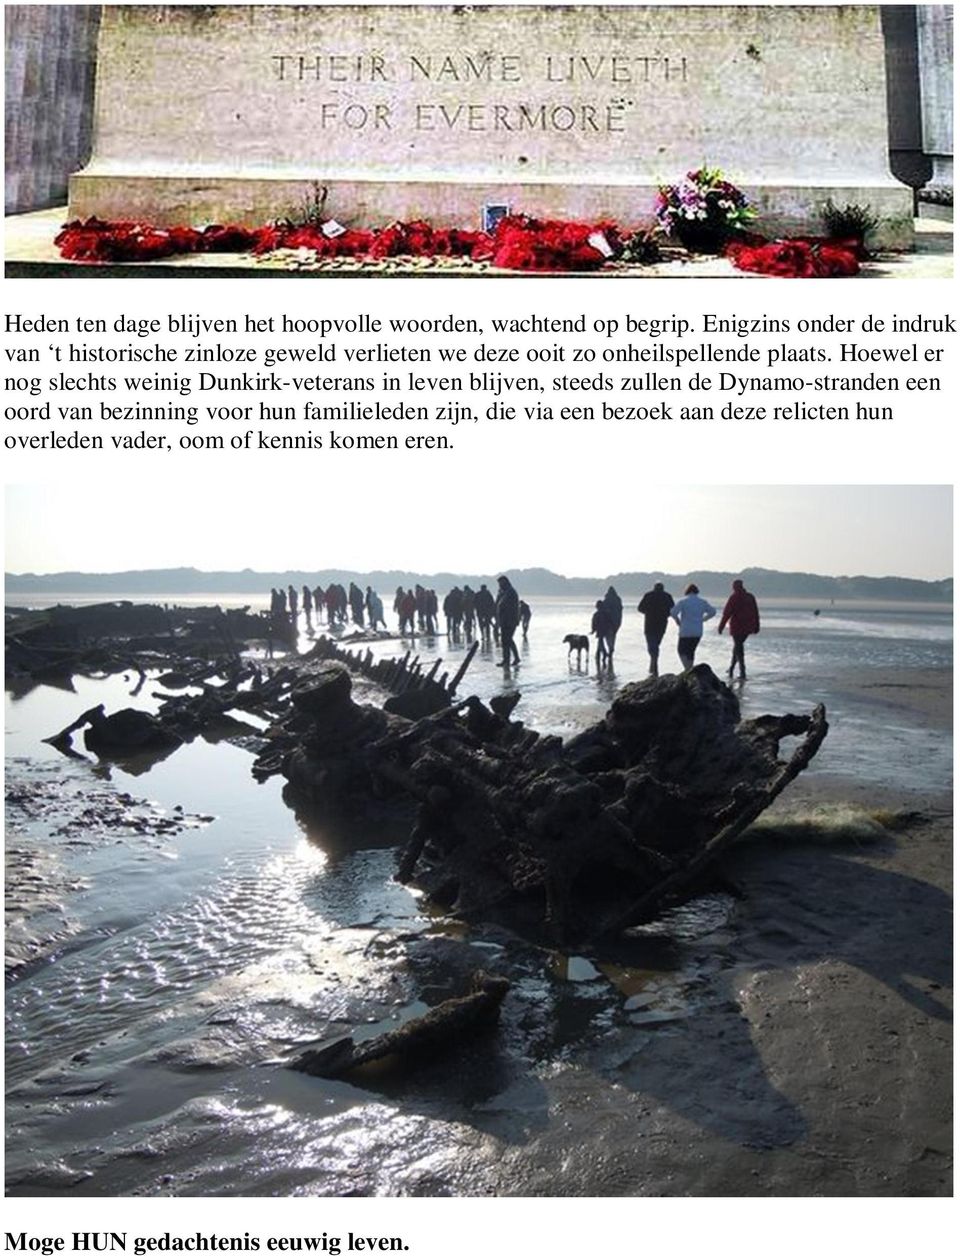 Hoewel er nog slechts weinig Dunkirk-veterans in leven blijven, steeds zullen de Dynamo-stranden een oord van